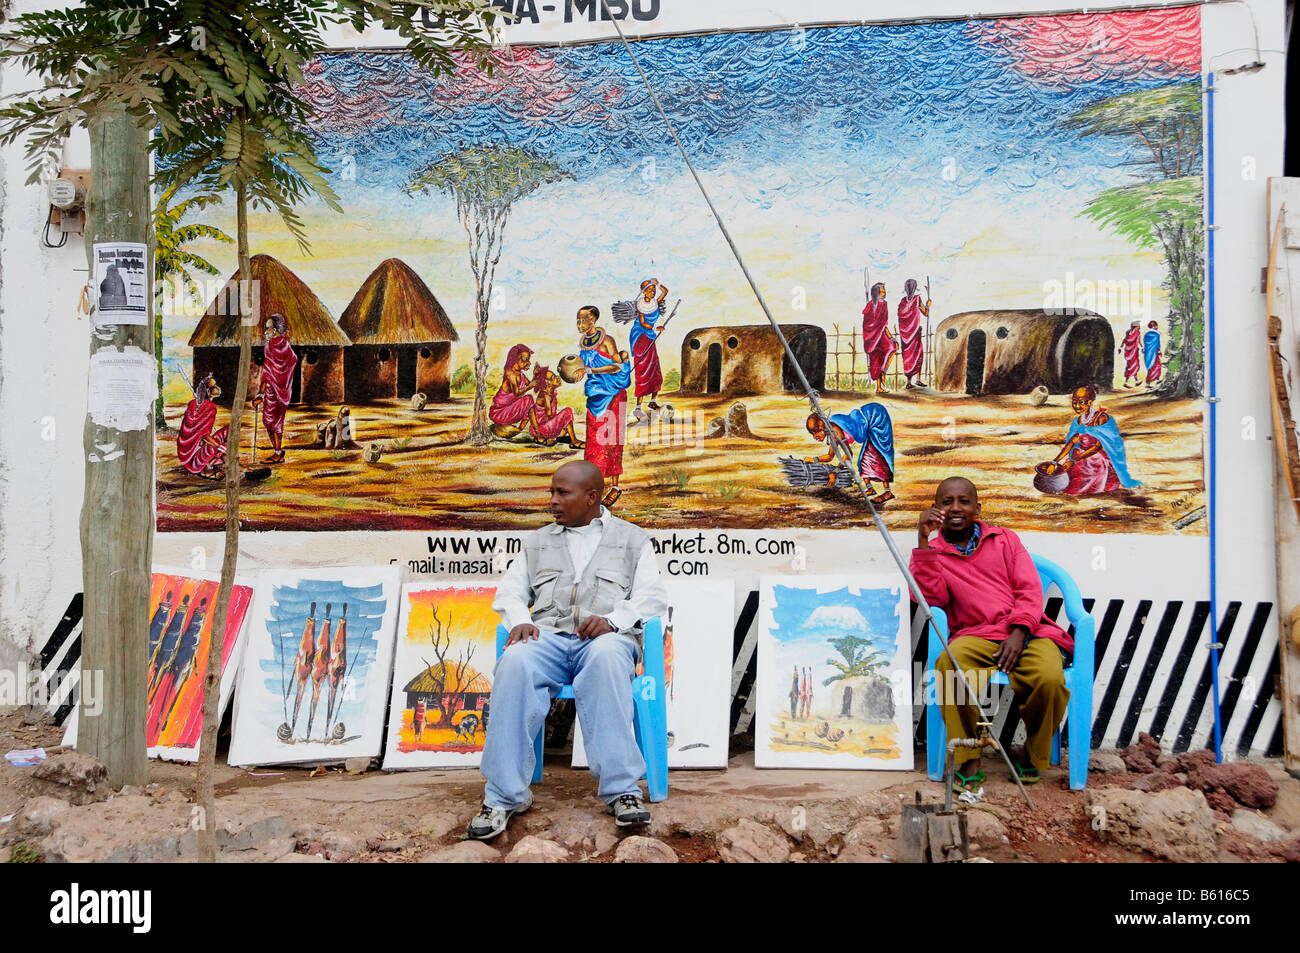 Souvenir sellers in front of a souvenir shop, Mto Wa Mbu, Tanzania, Africa Stock Photo